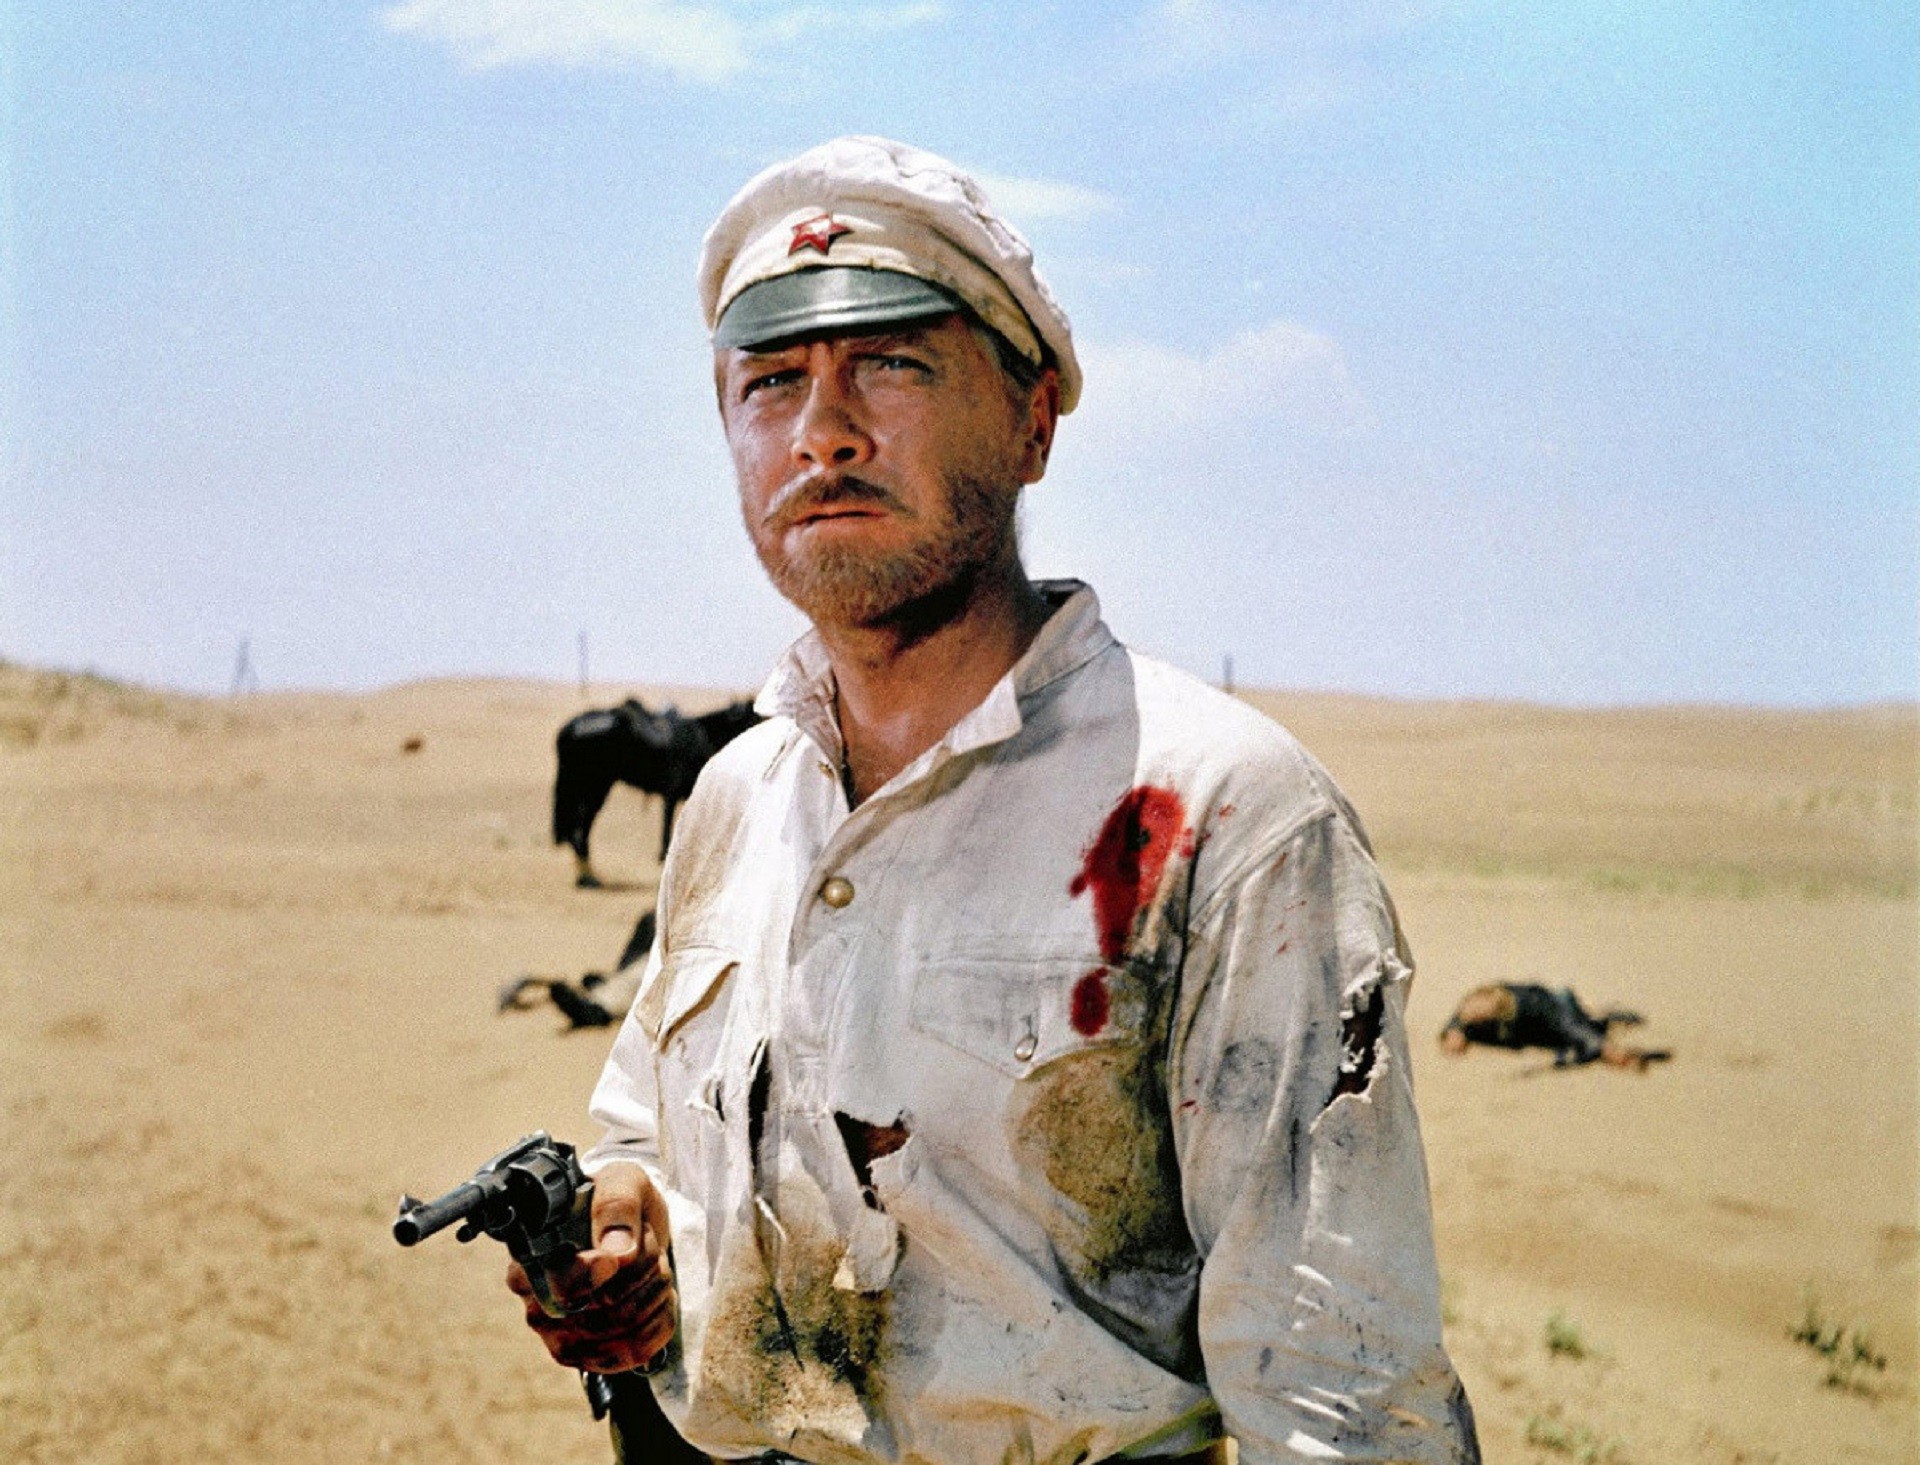 Cena do filme “O Sol Branco do Deserto”, 1969.